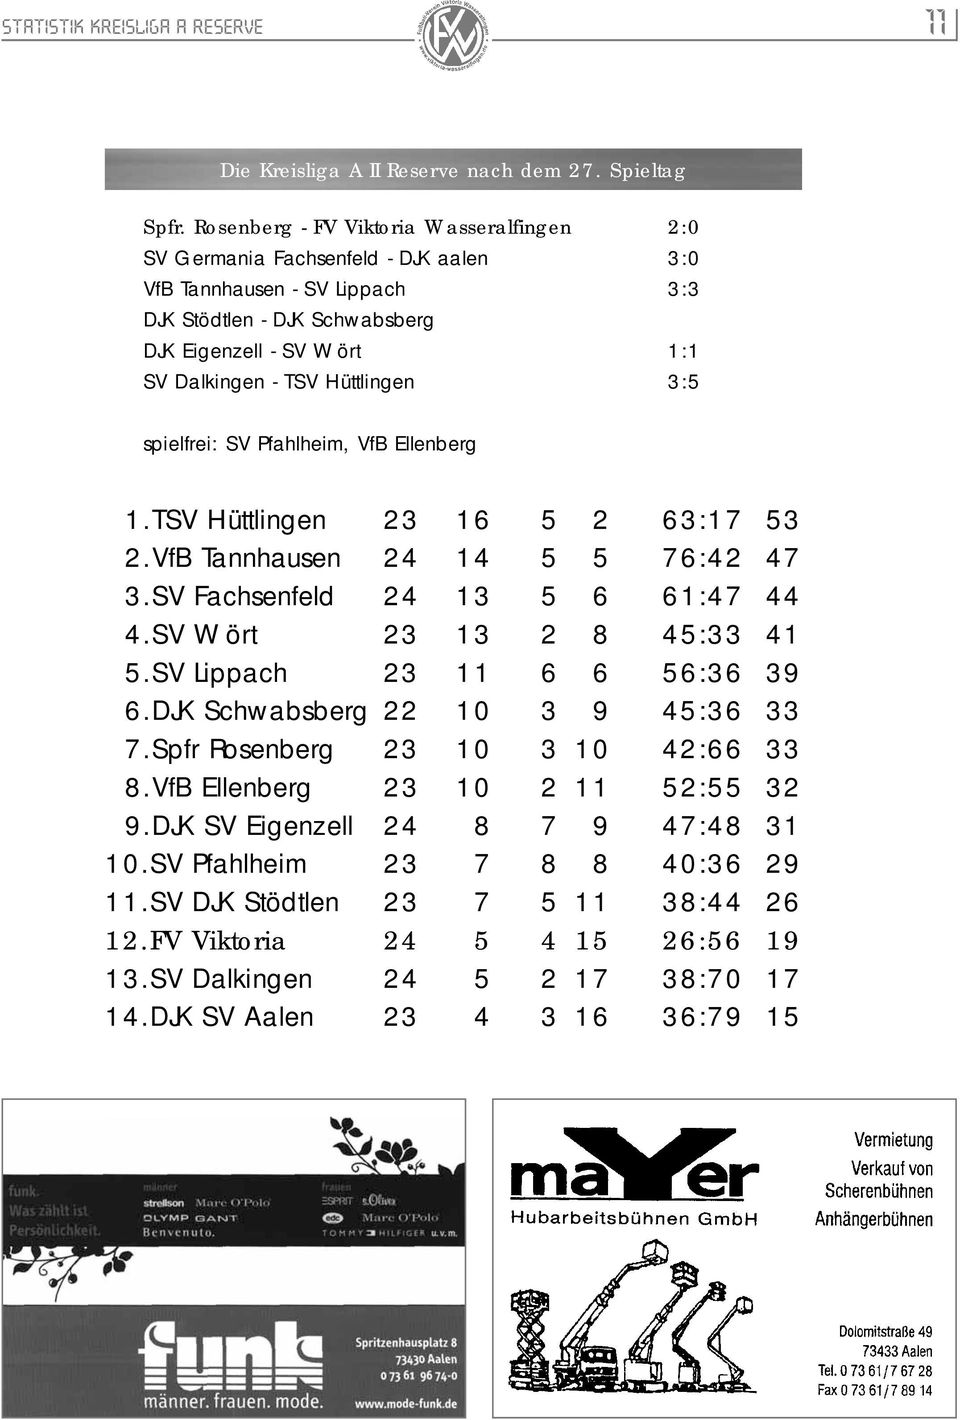 Hüttlingen 3:5 spielfrei: SV Pfahlheim, VfB Ellenberg 1.TSV Hüttlingen 23 16 5 2 63:17 53 2.VfB Tannhausen 24 14 5 5 76:42 47 3.SV Fachsenfeld 24 13 5 6 61:47 44 4.SV Wört 23 13 2 8 45:33 41 5.